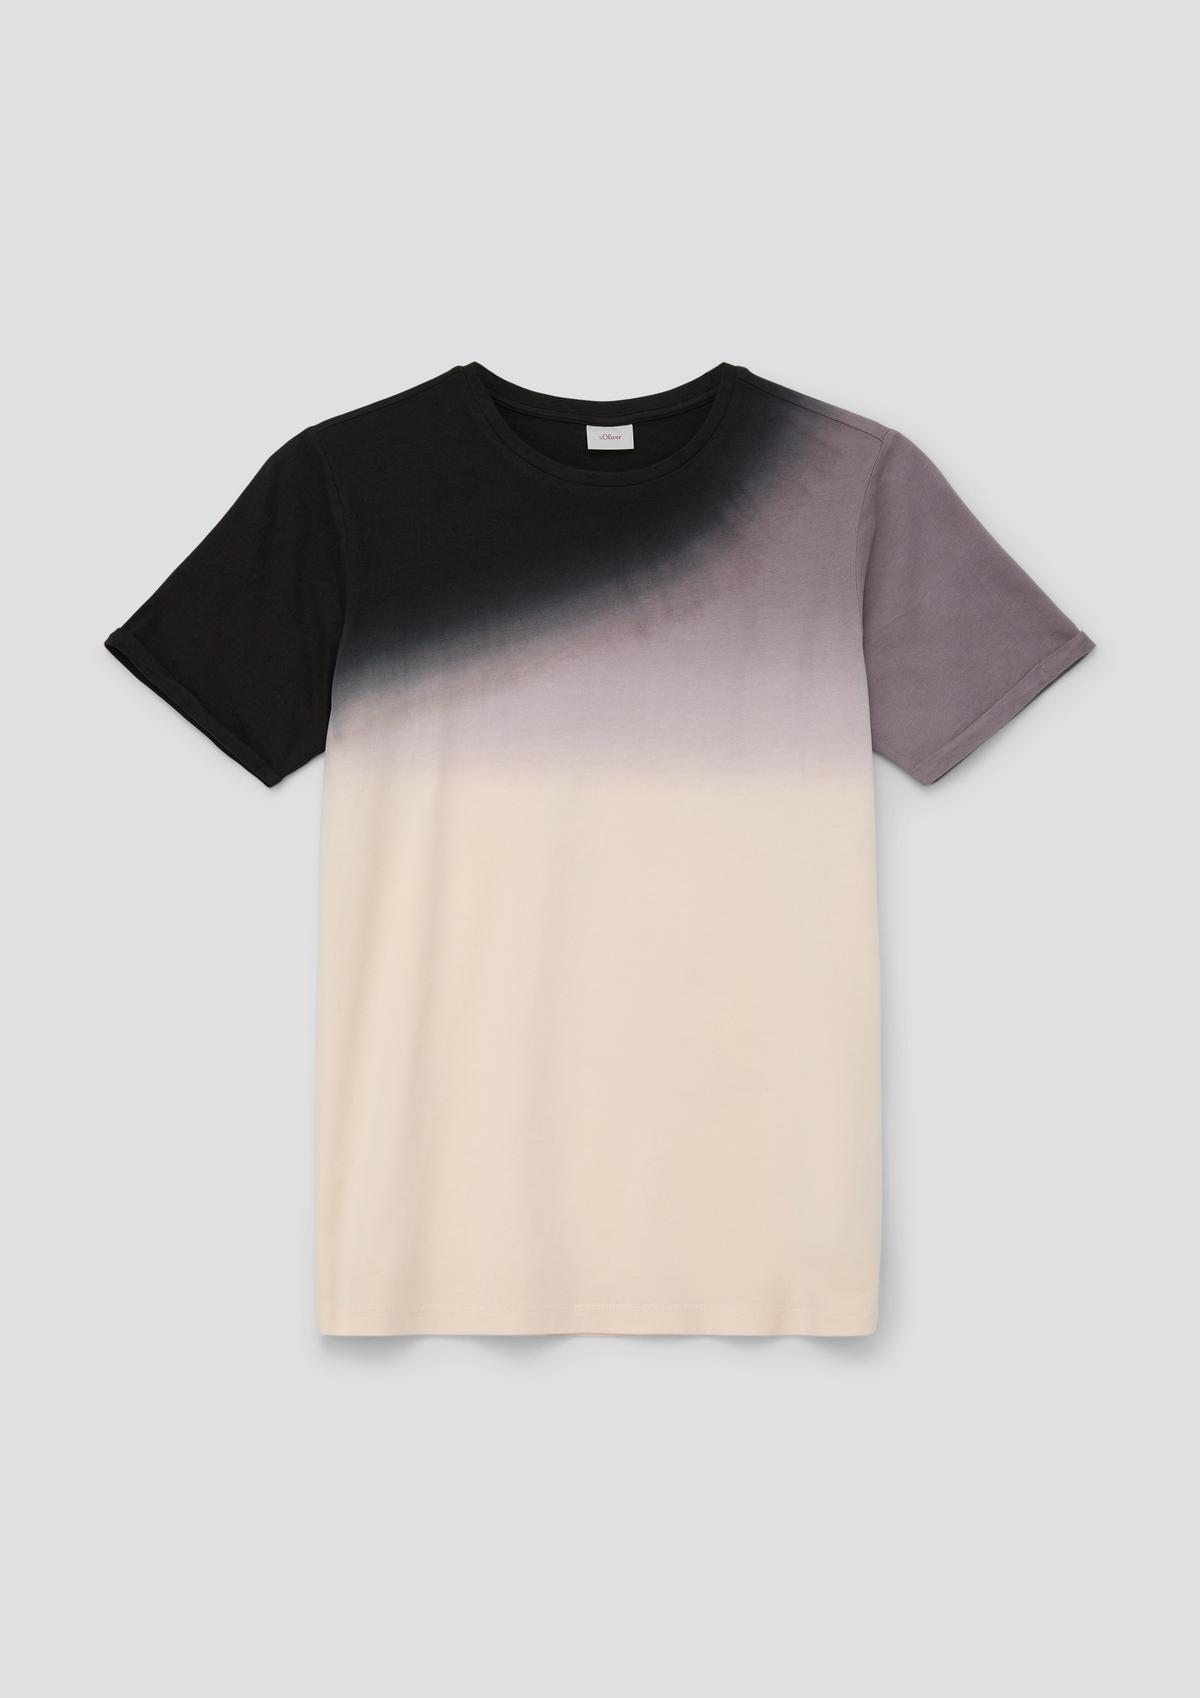 T-Shirt im Colour Blocking Design